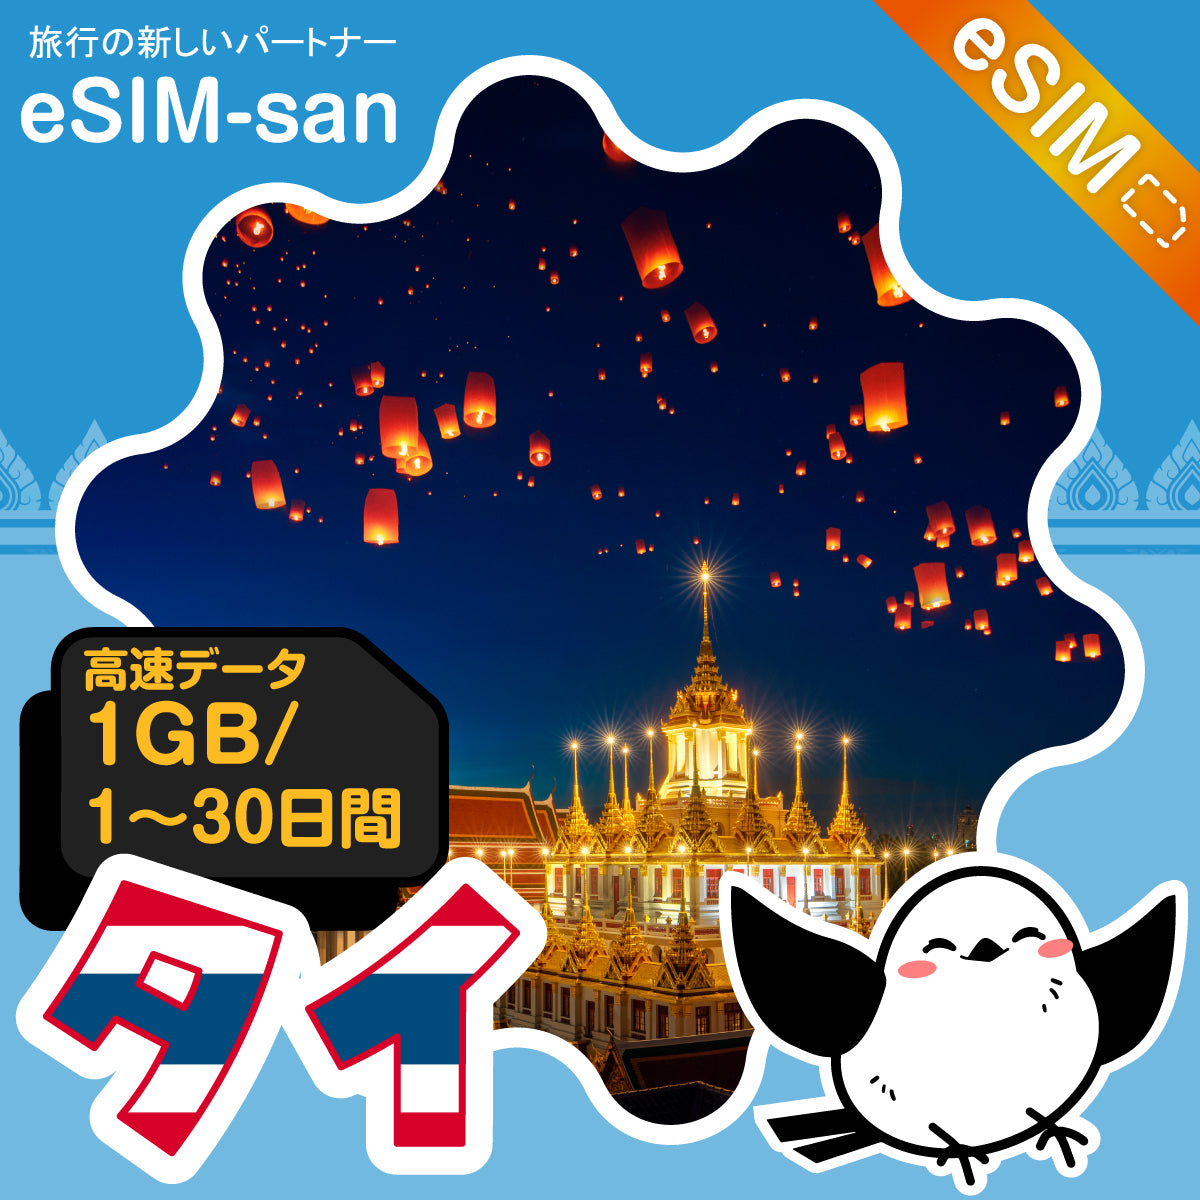 タイeSIMの1GB/dayプラン画像_eSIM-san